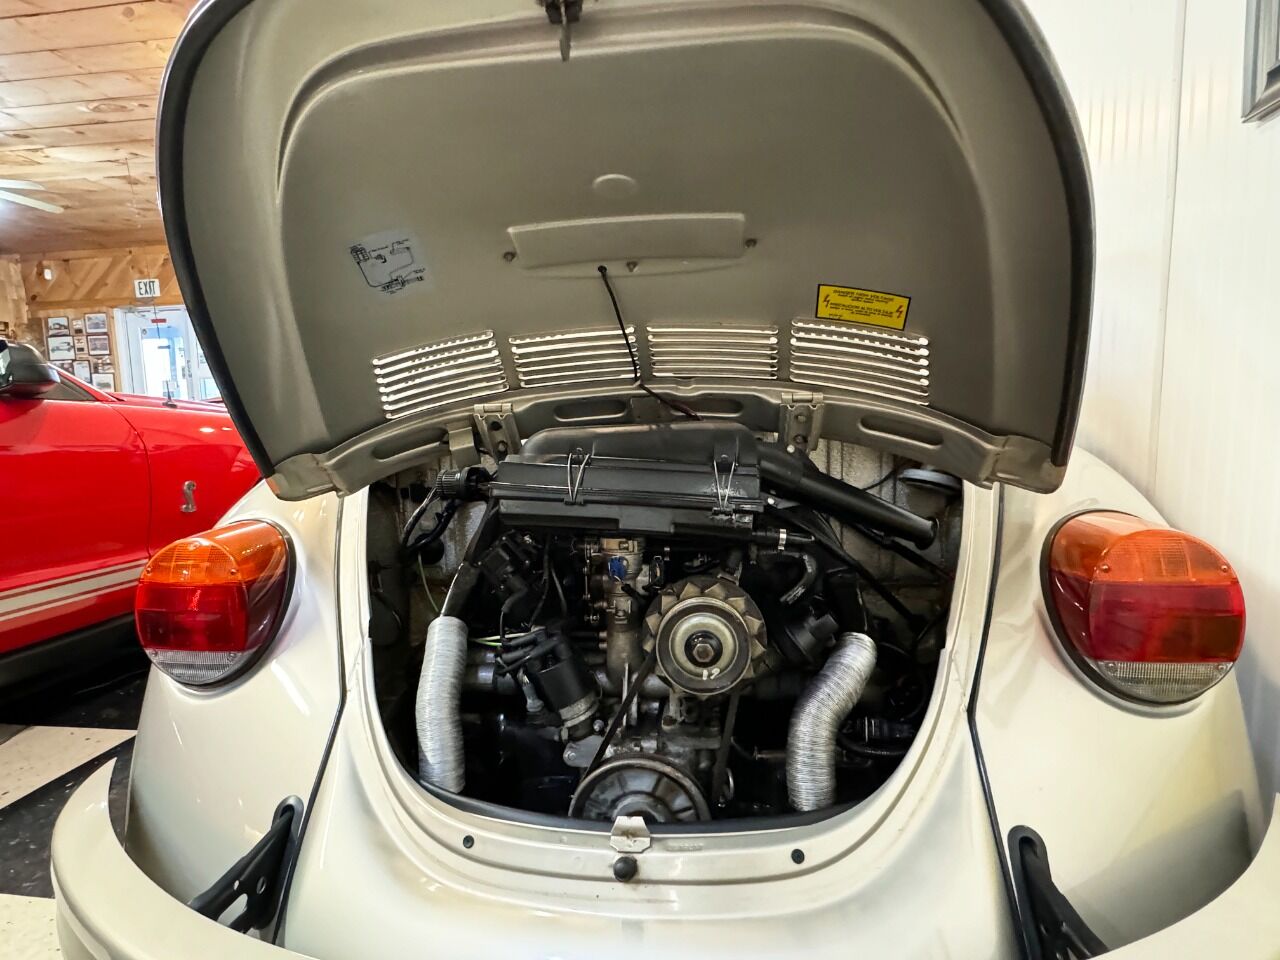 1968 Volkswagen Beetle 29